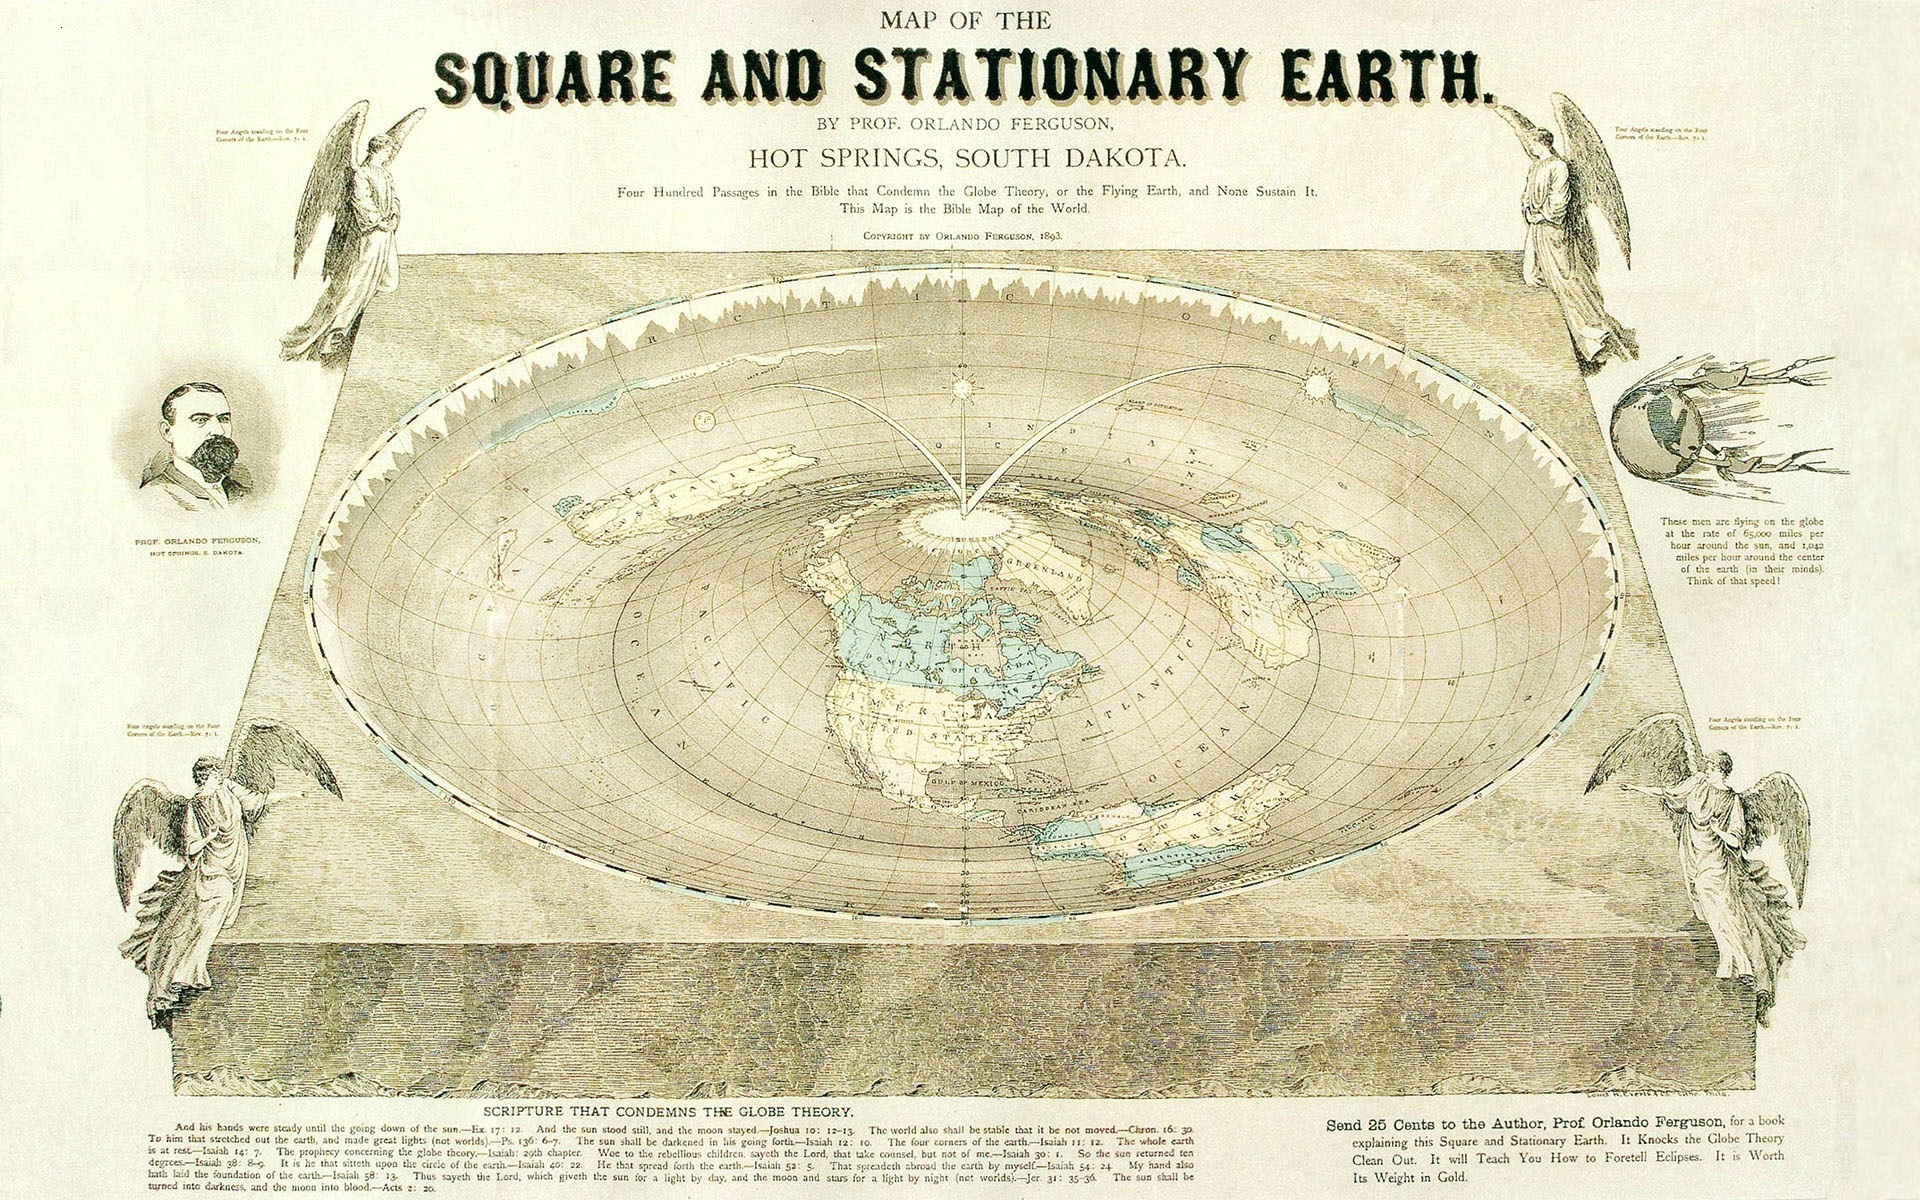 world, Map Wallpaper